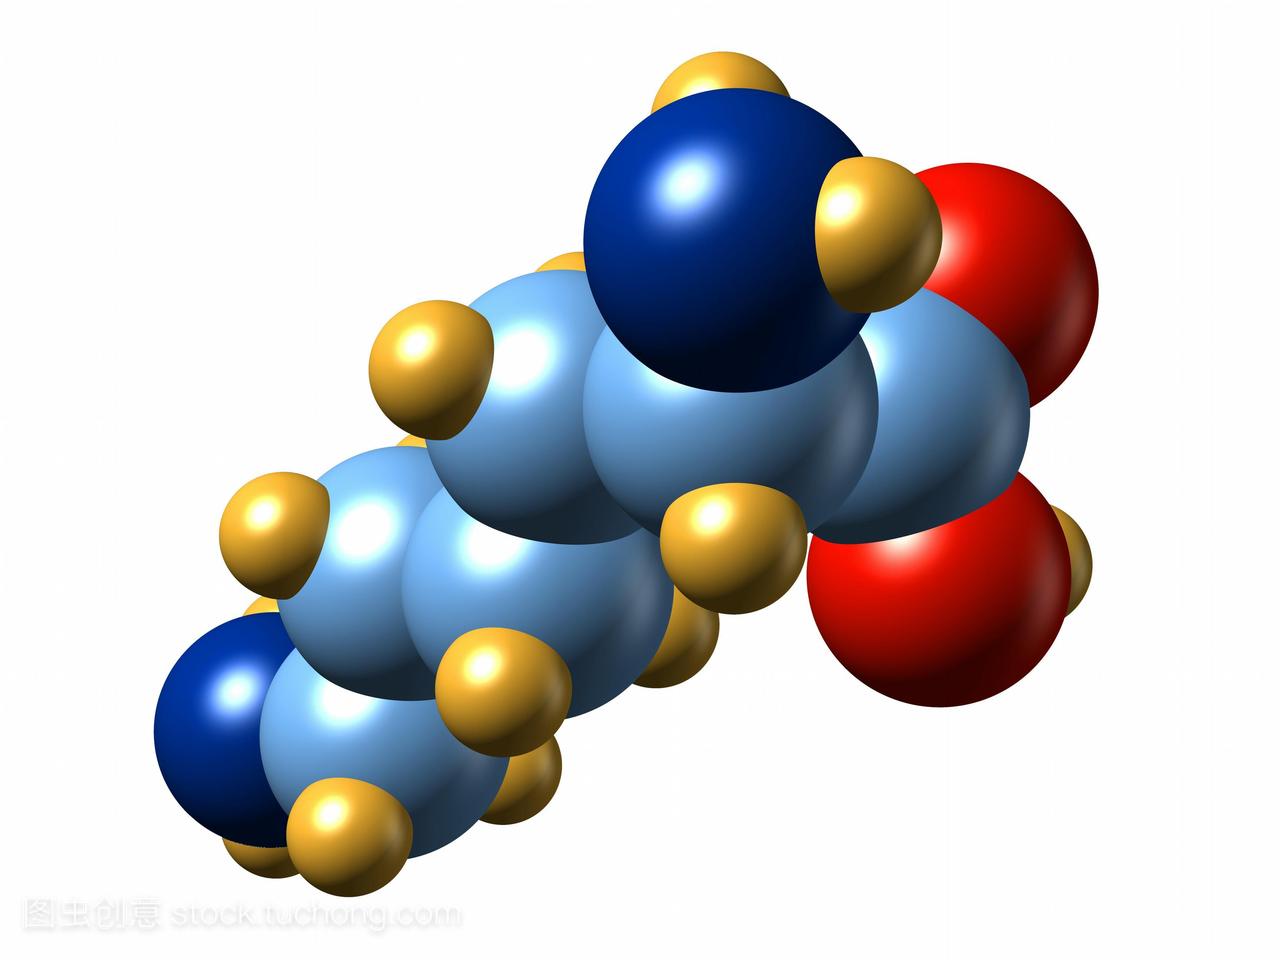 赖氨酸。分子氨基酸赖氨酸的模型。它的化学式